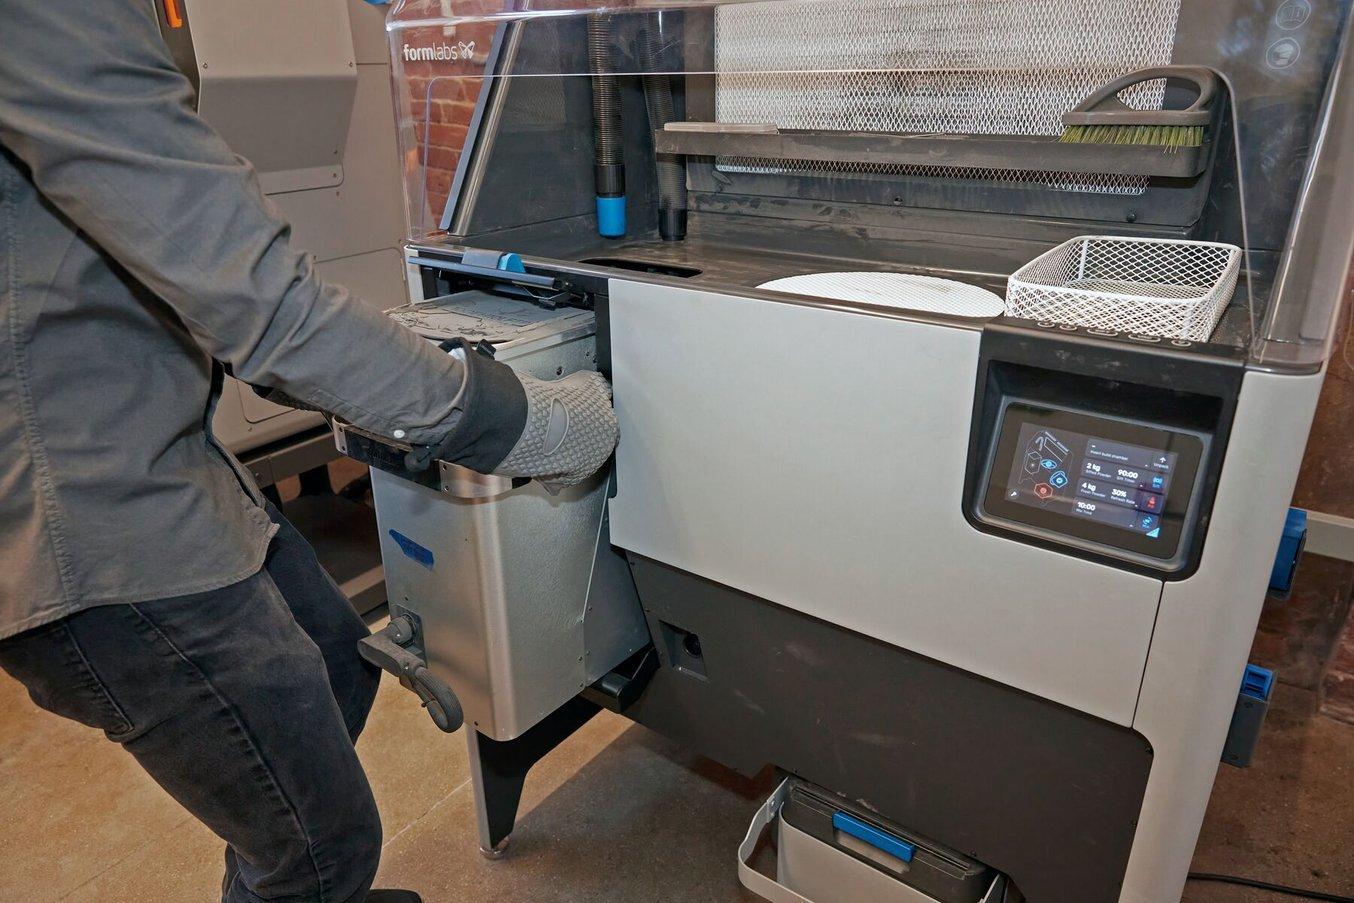 La Fuse Sift completa el proceso de trabajo de impresión SLS de la Fuse 1. Ofrece un sistema seguro y eficiente para extraer las piezas y reciclar el polvo.